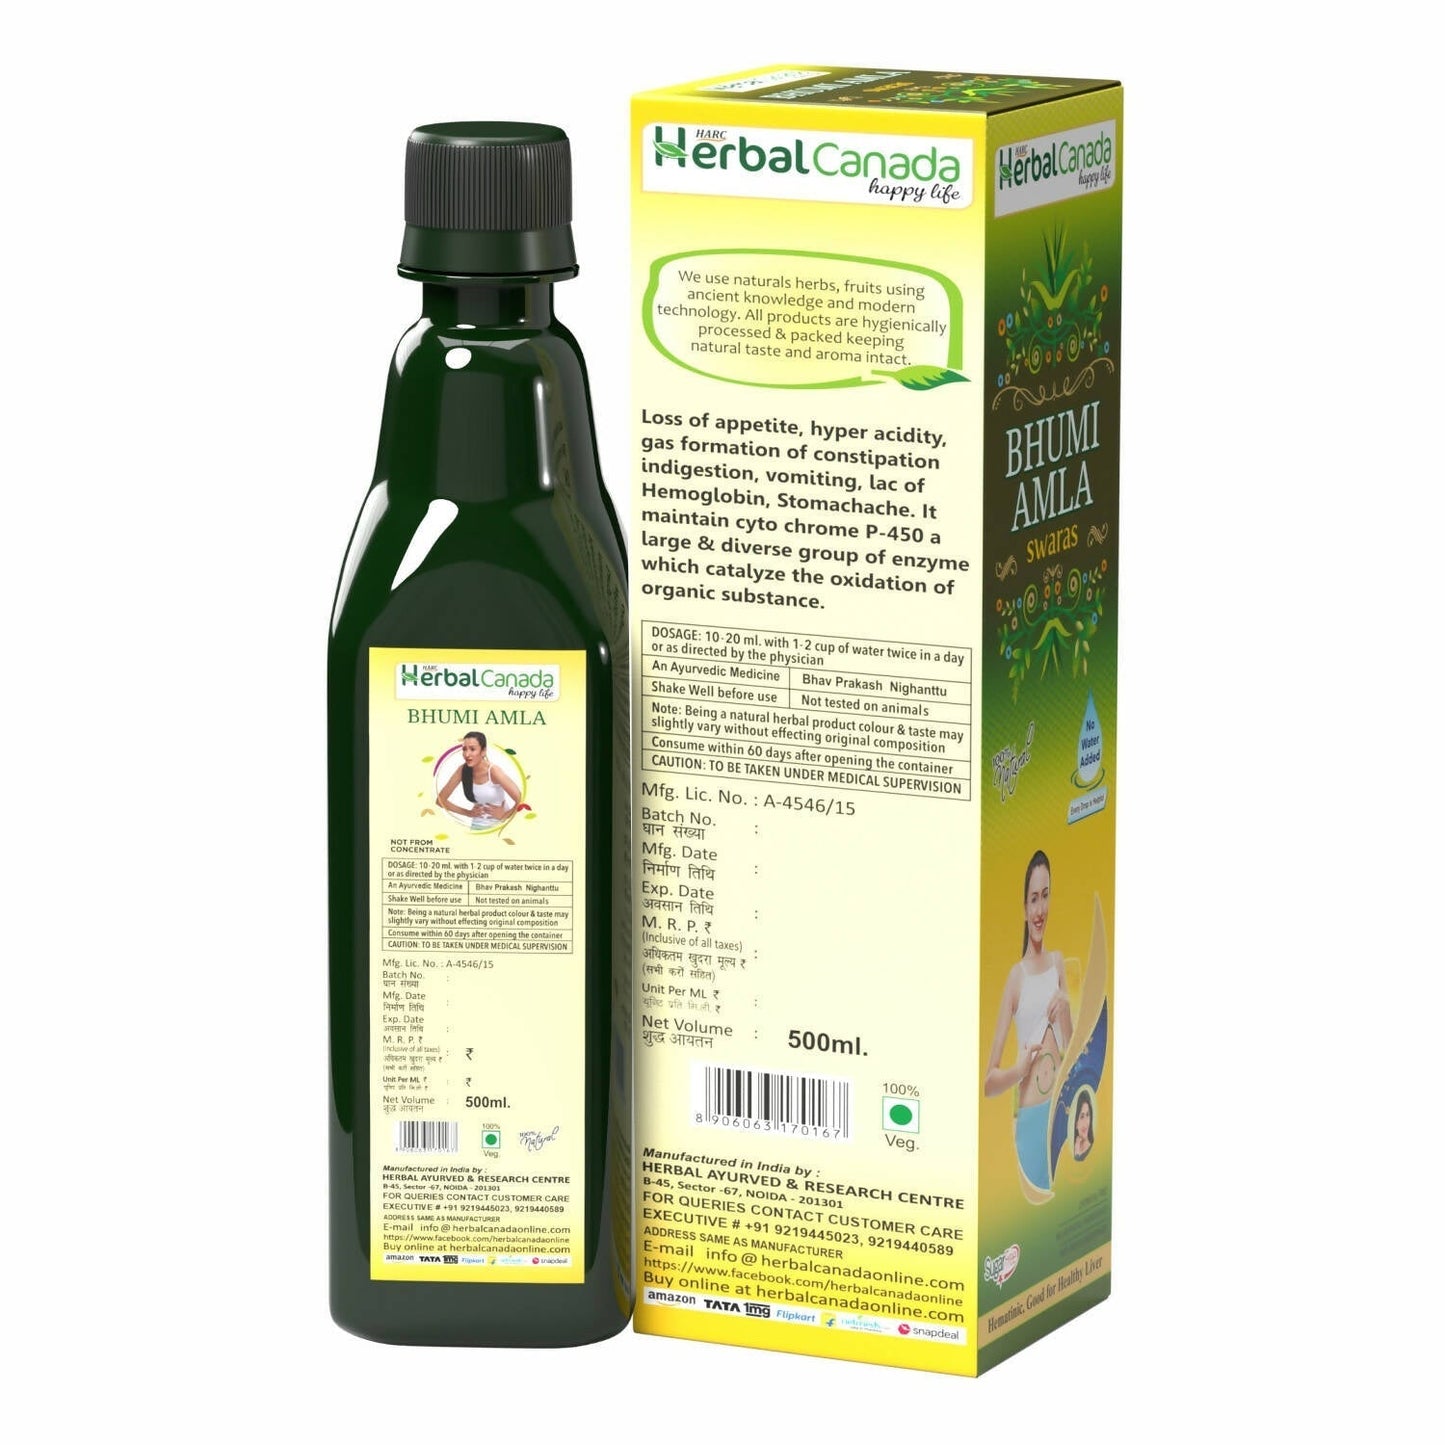 Herbal Canada Bhumi Amla Juice